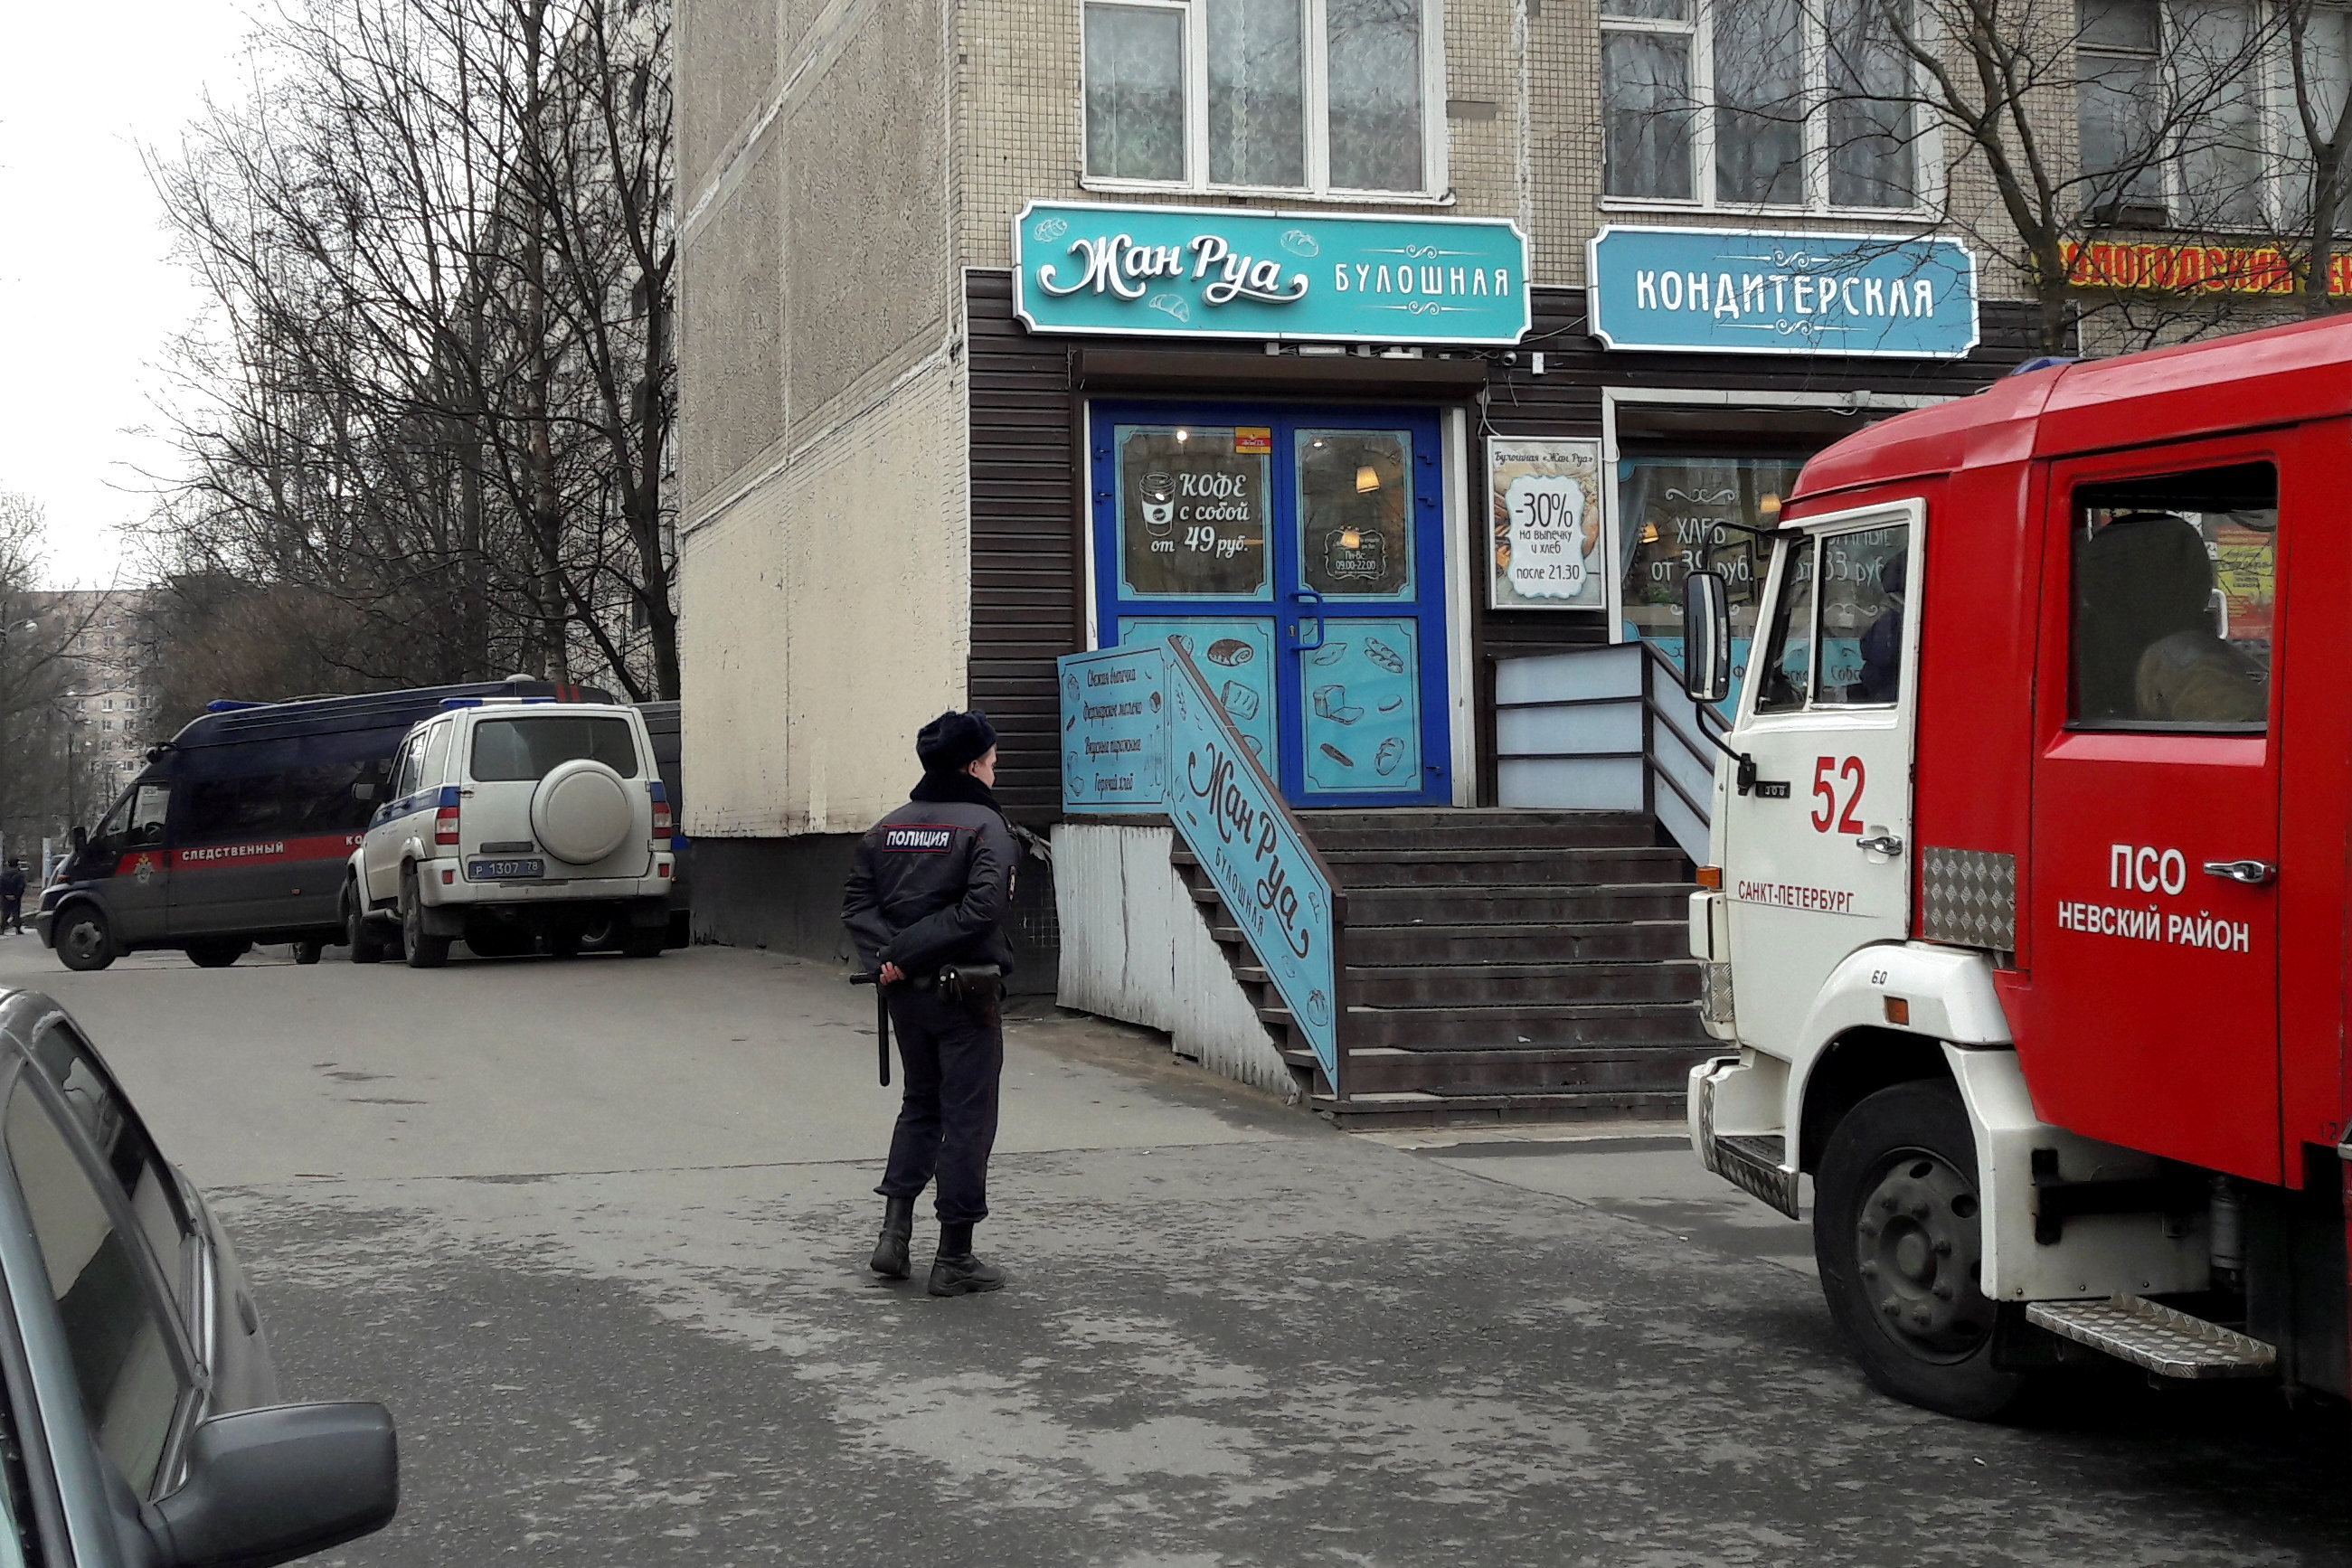 ضابط شرطة روسى يؤمن منطقة سكنية